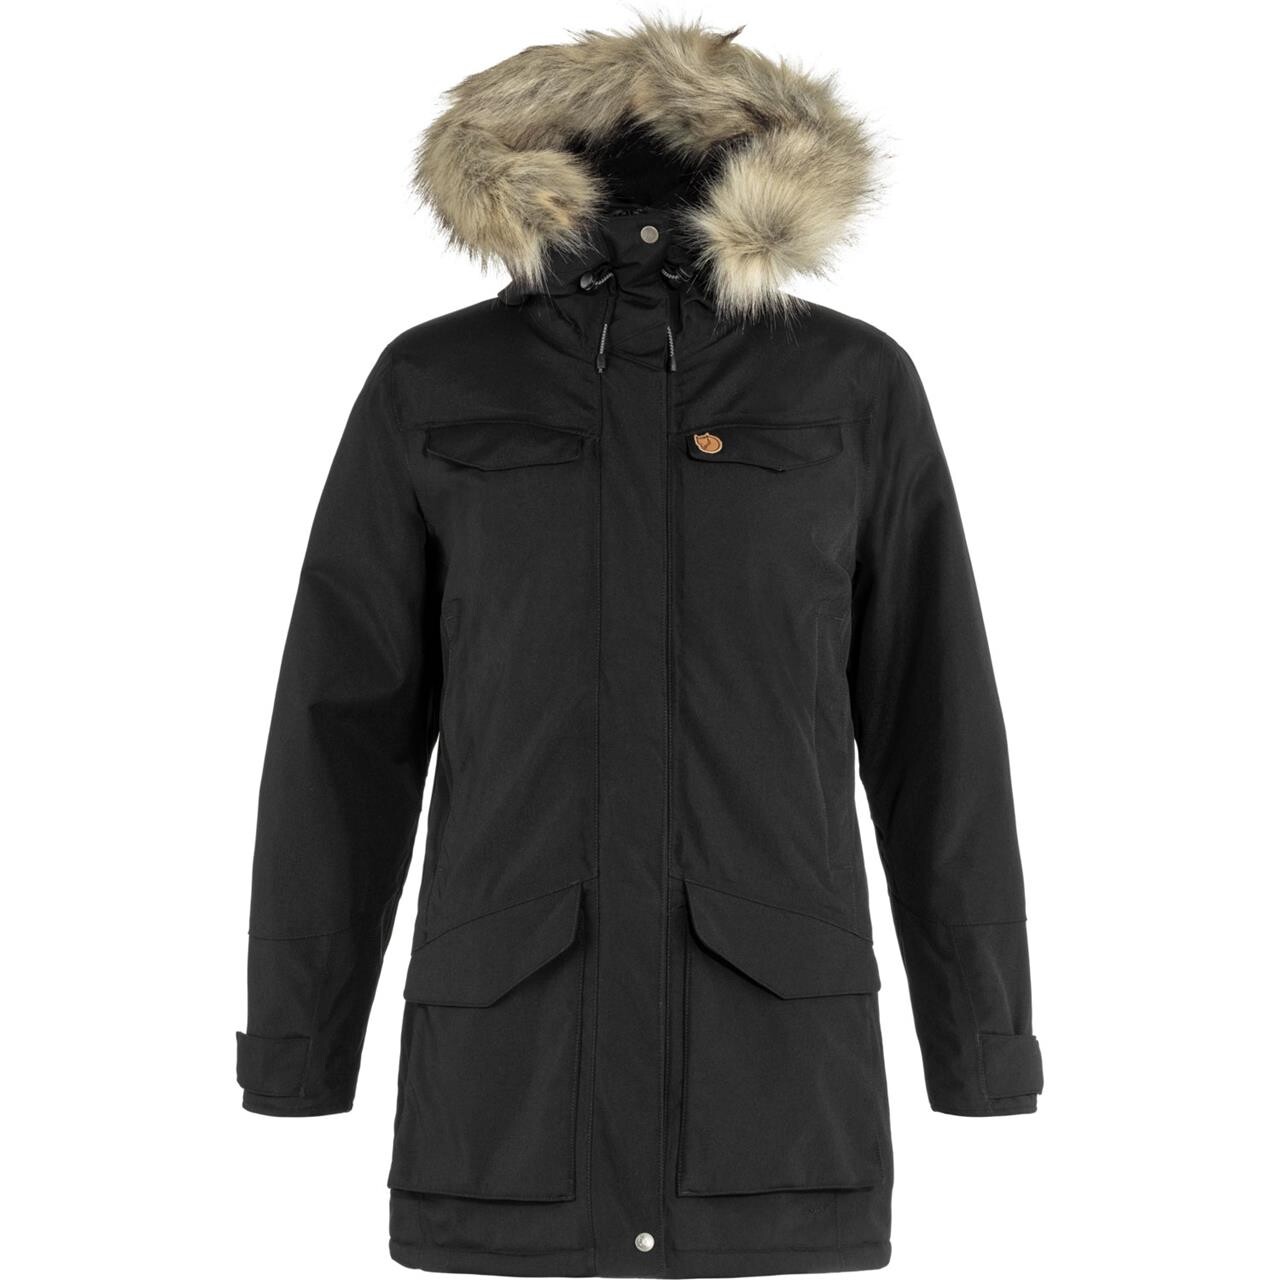 Varme og vandtætte jakker til kvinder Køb din jakke hos Friluftsland